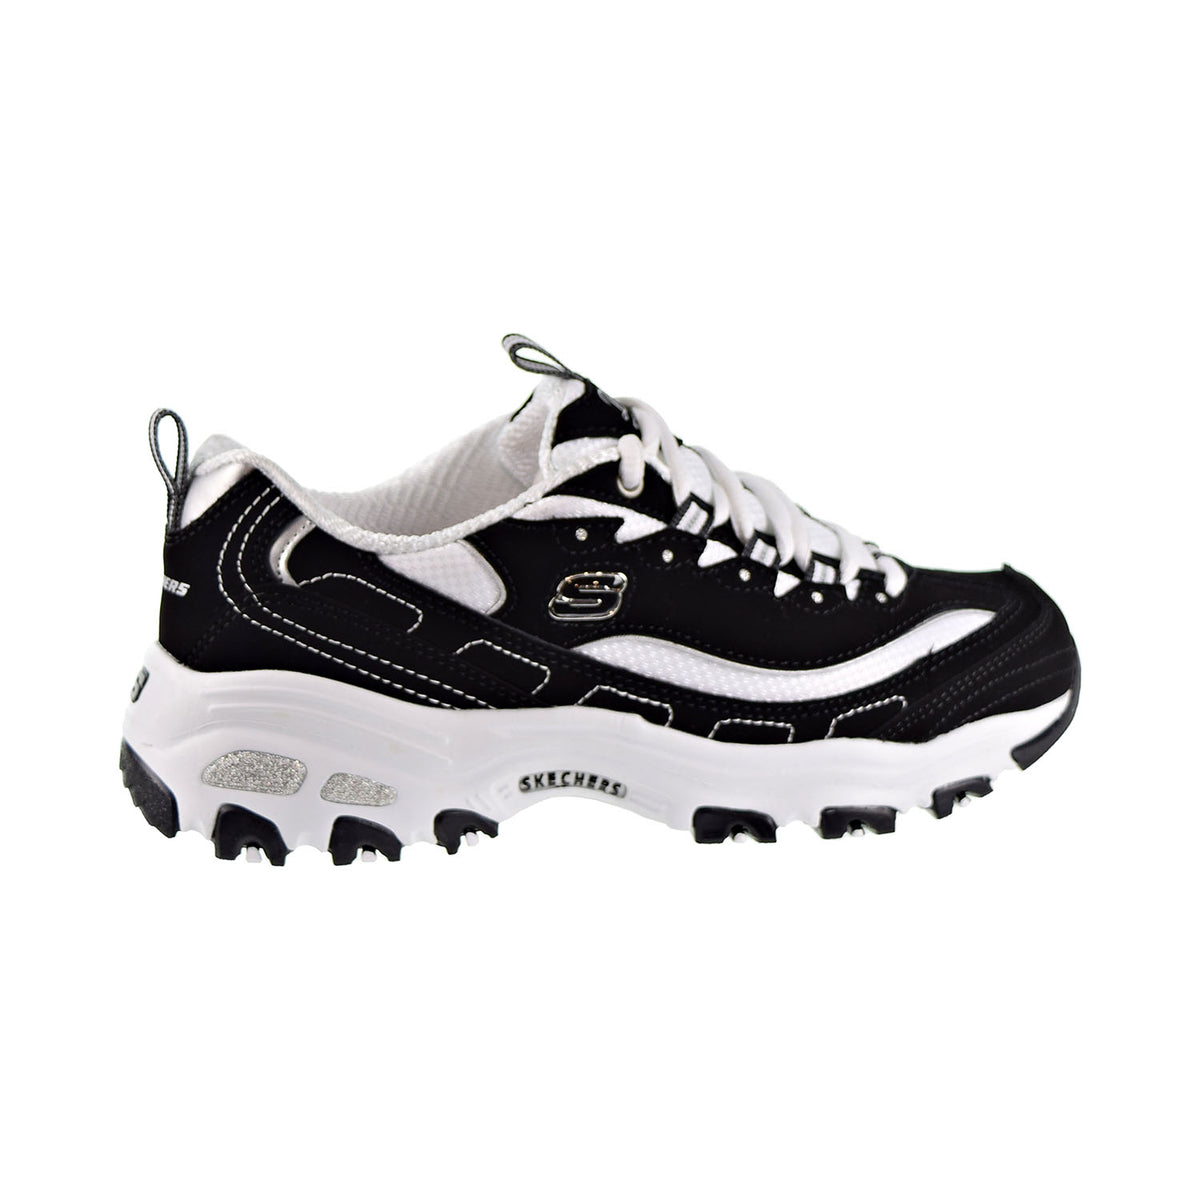 Skechers D'Lites Biggest Fan Memory Foam Sneakers Black/White